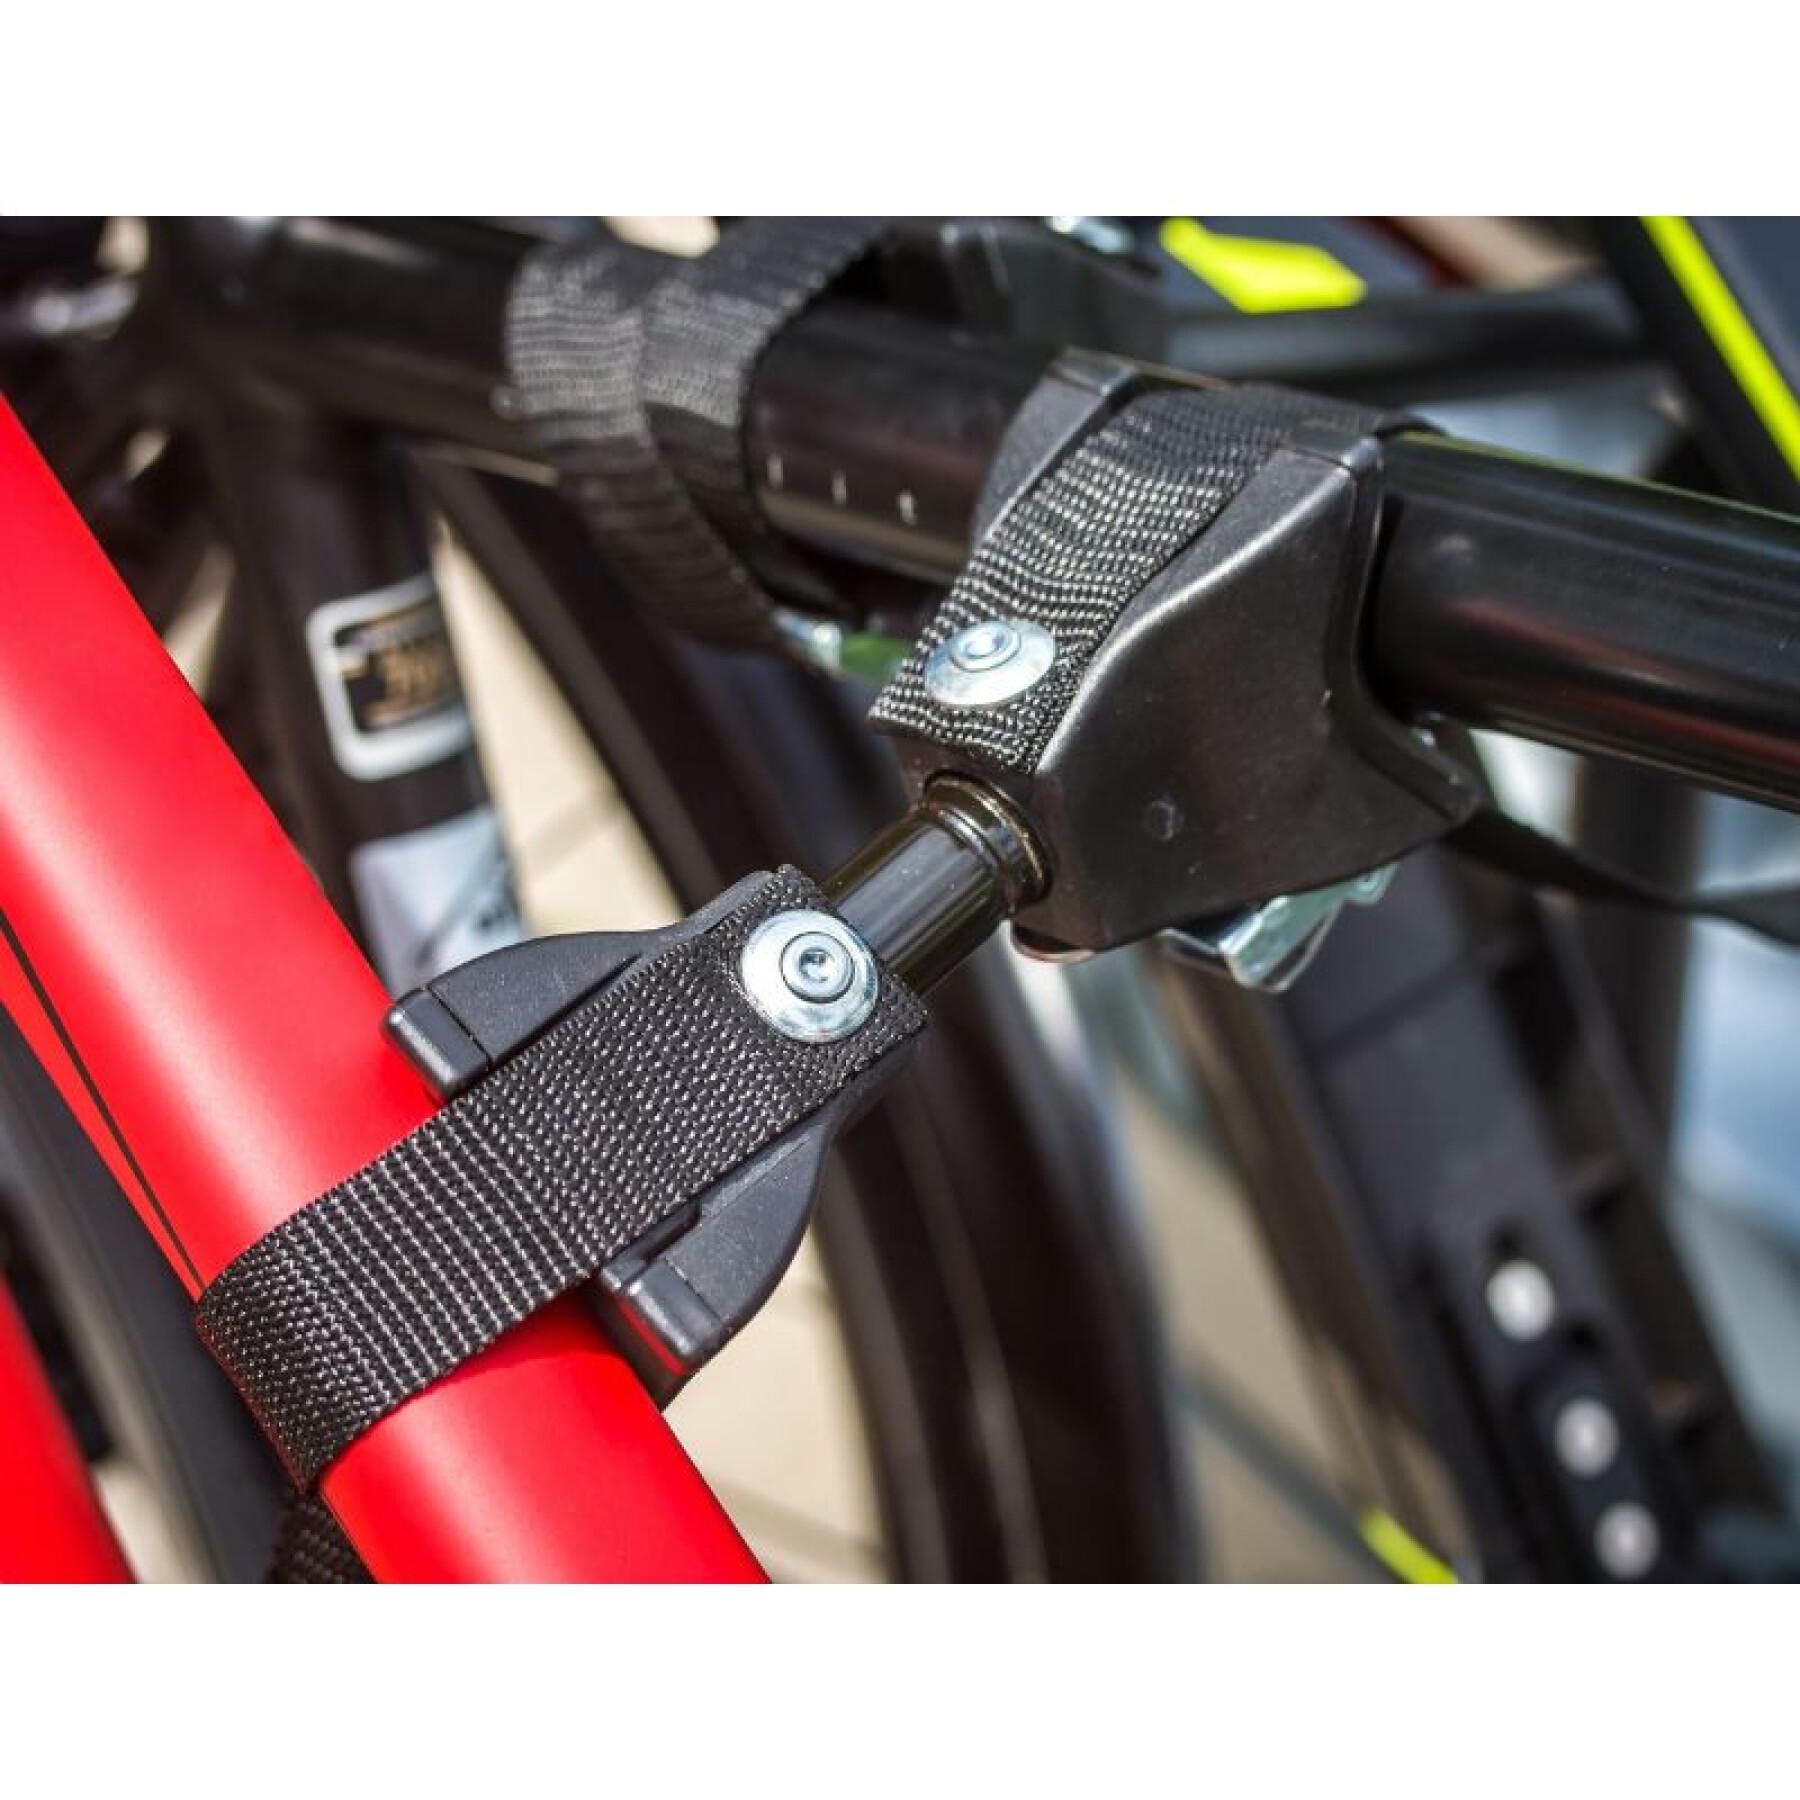 Porte vélo plateforme pour 3 vélos fixation rapide sur l'attelage - compatible pour mettre 2 vae P2R Eufab Amber 60 kgs